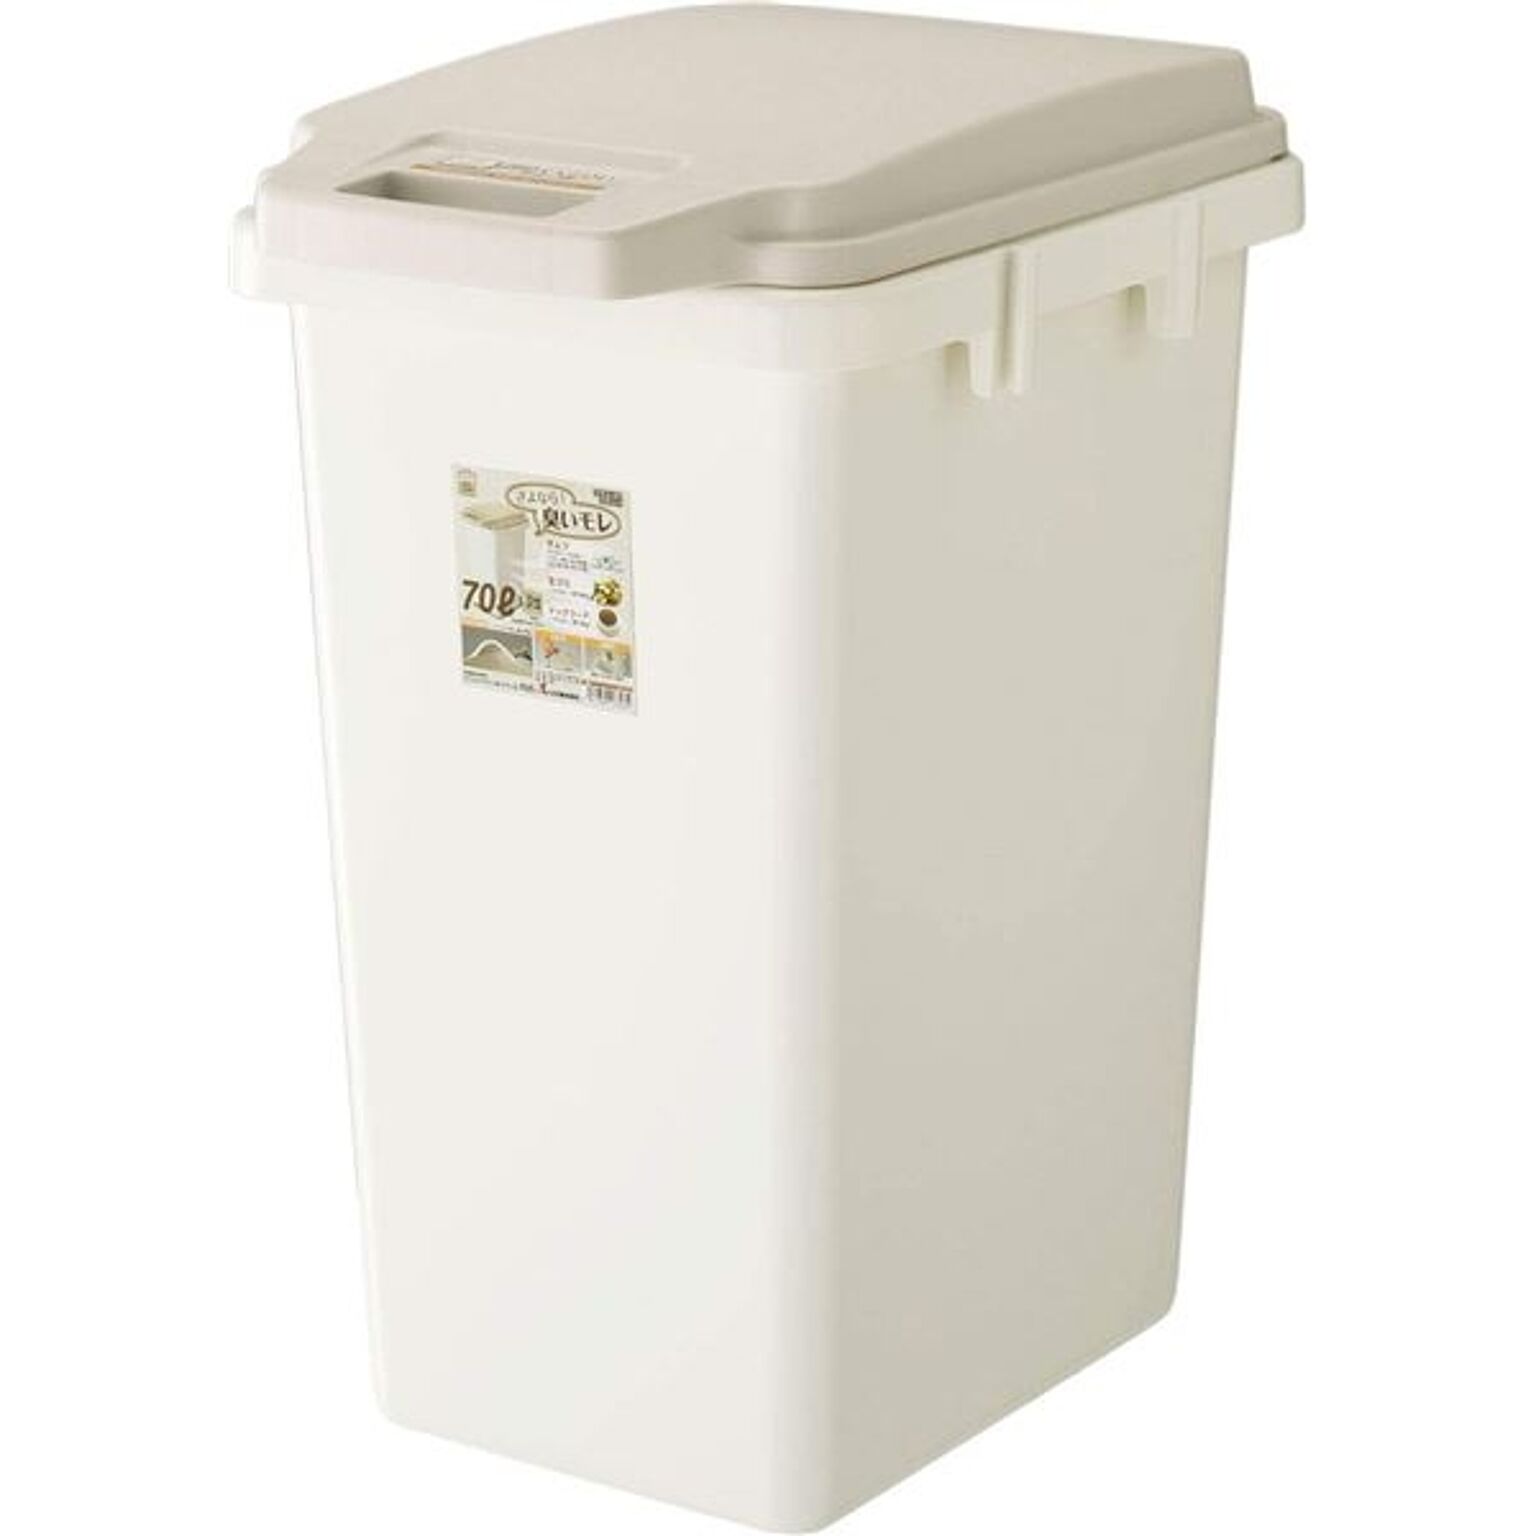 ゴミ箱 ダストボックス 約幅38.1cm 70L ベージュ ロック式 ふた付き 臭い漏れ軽減仕様 ワンハンドパッキンペール キッチン